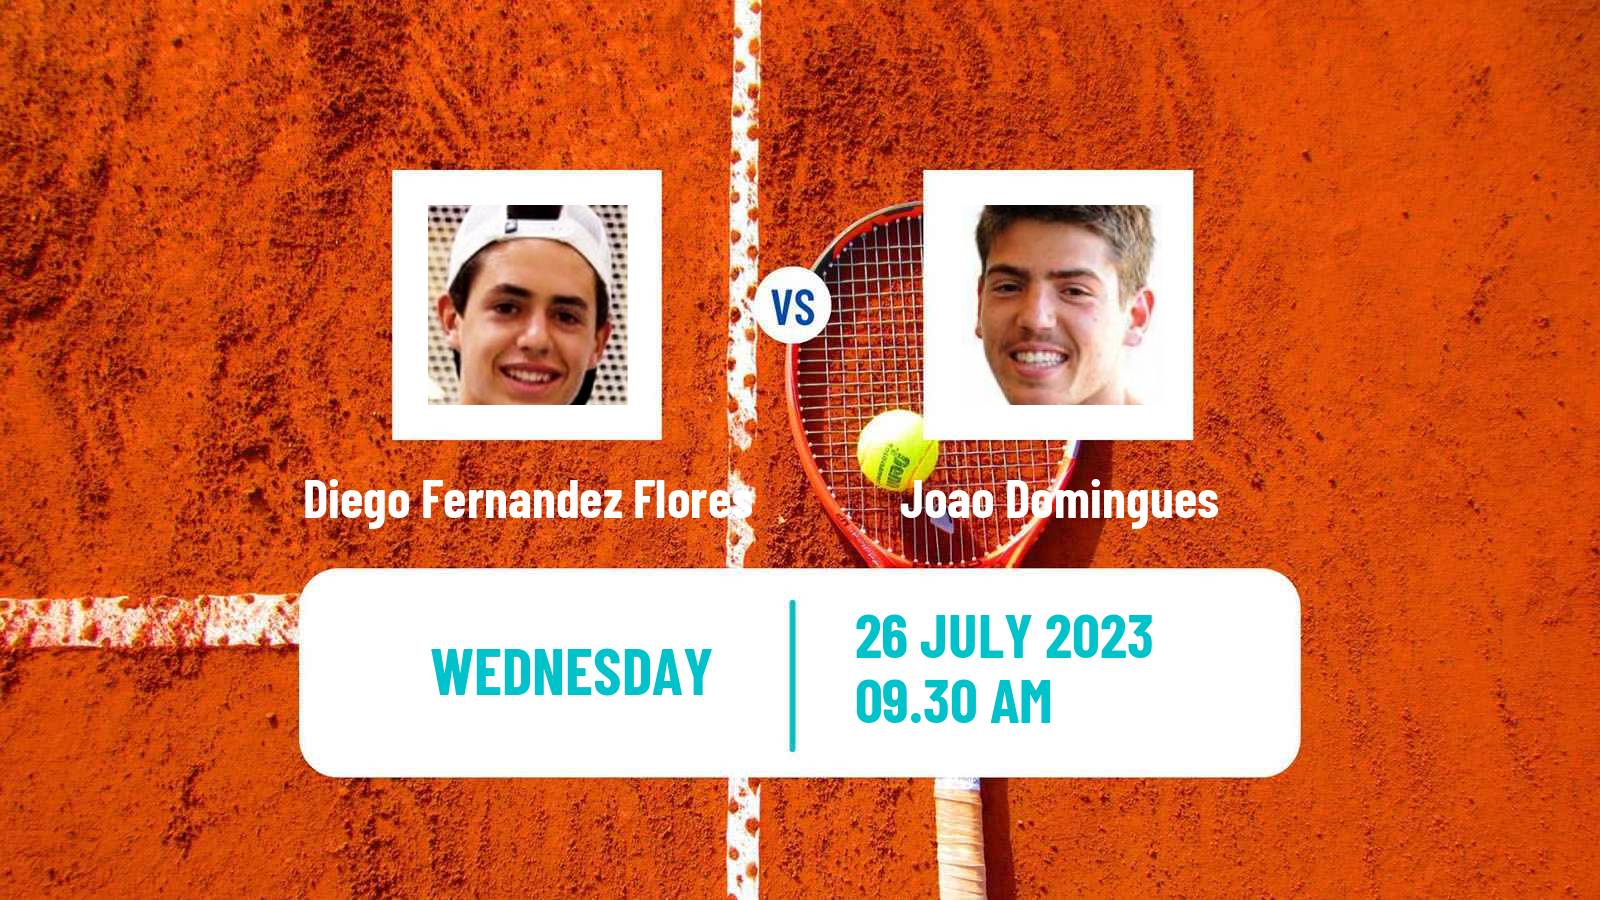 Tennis ITF M25 Porto Men Diego Fernandez Flores - Joao Domingues